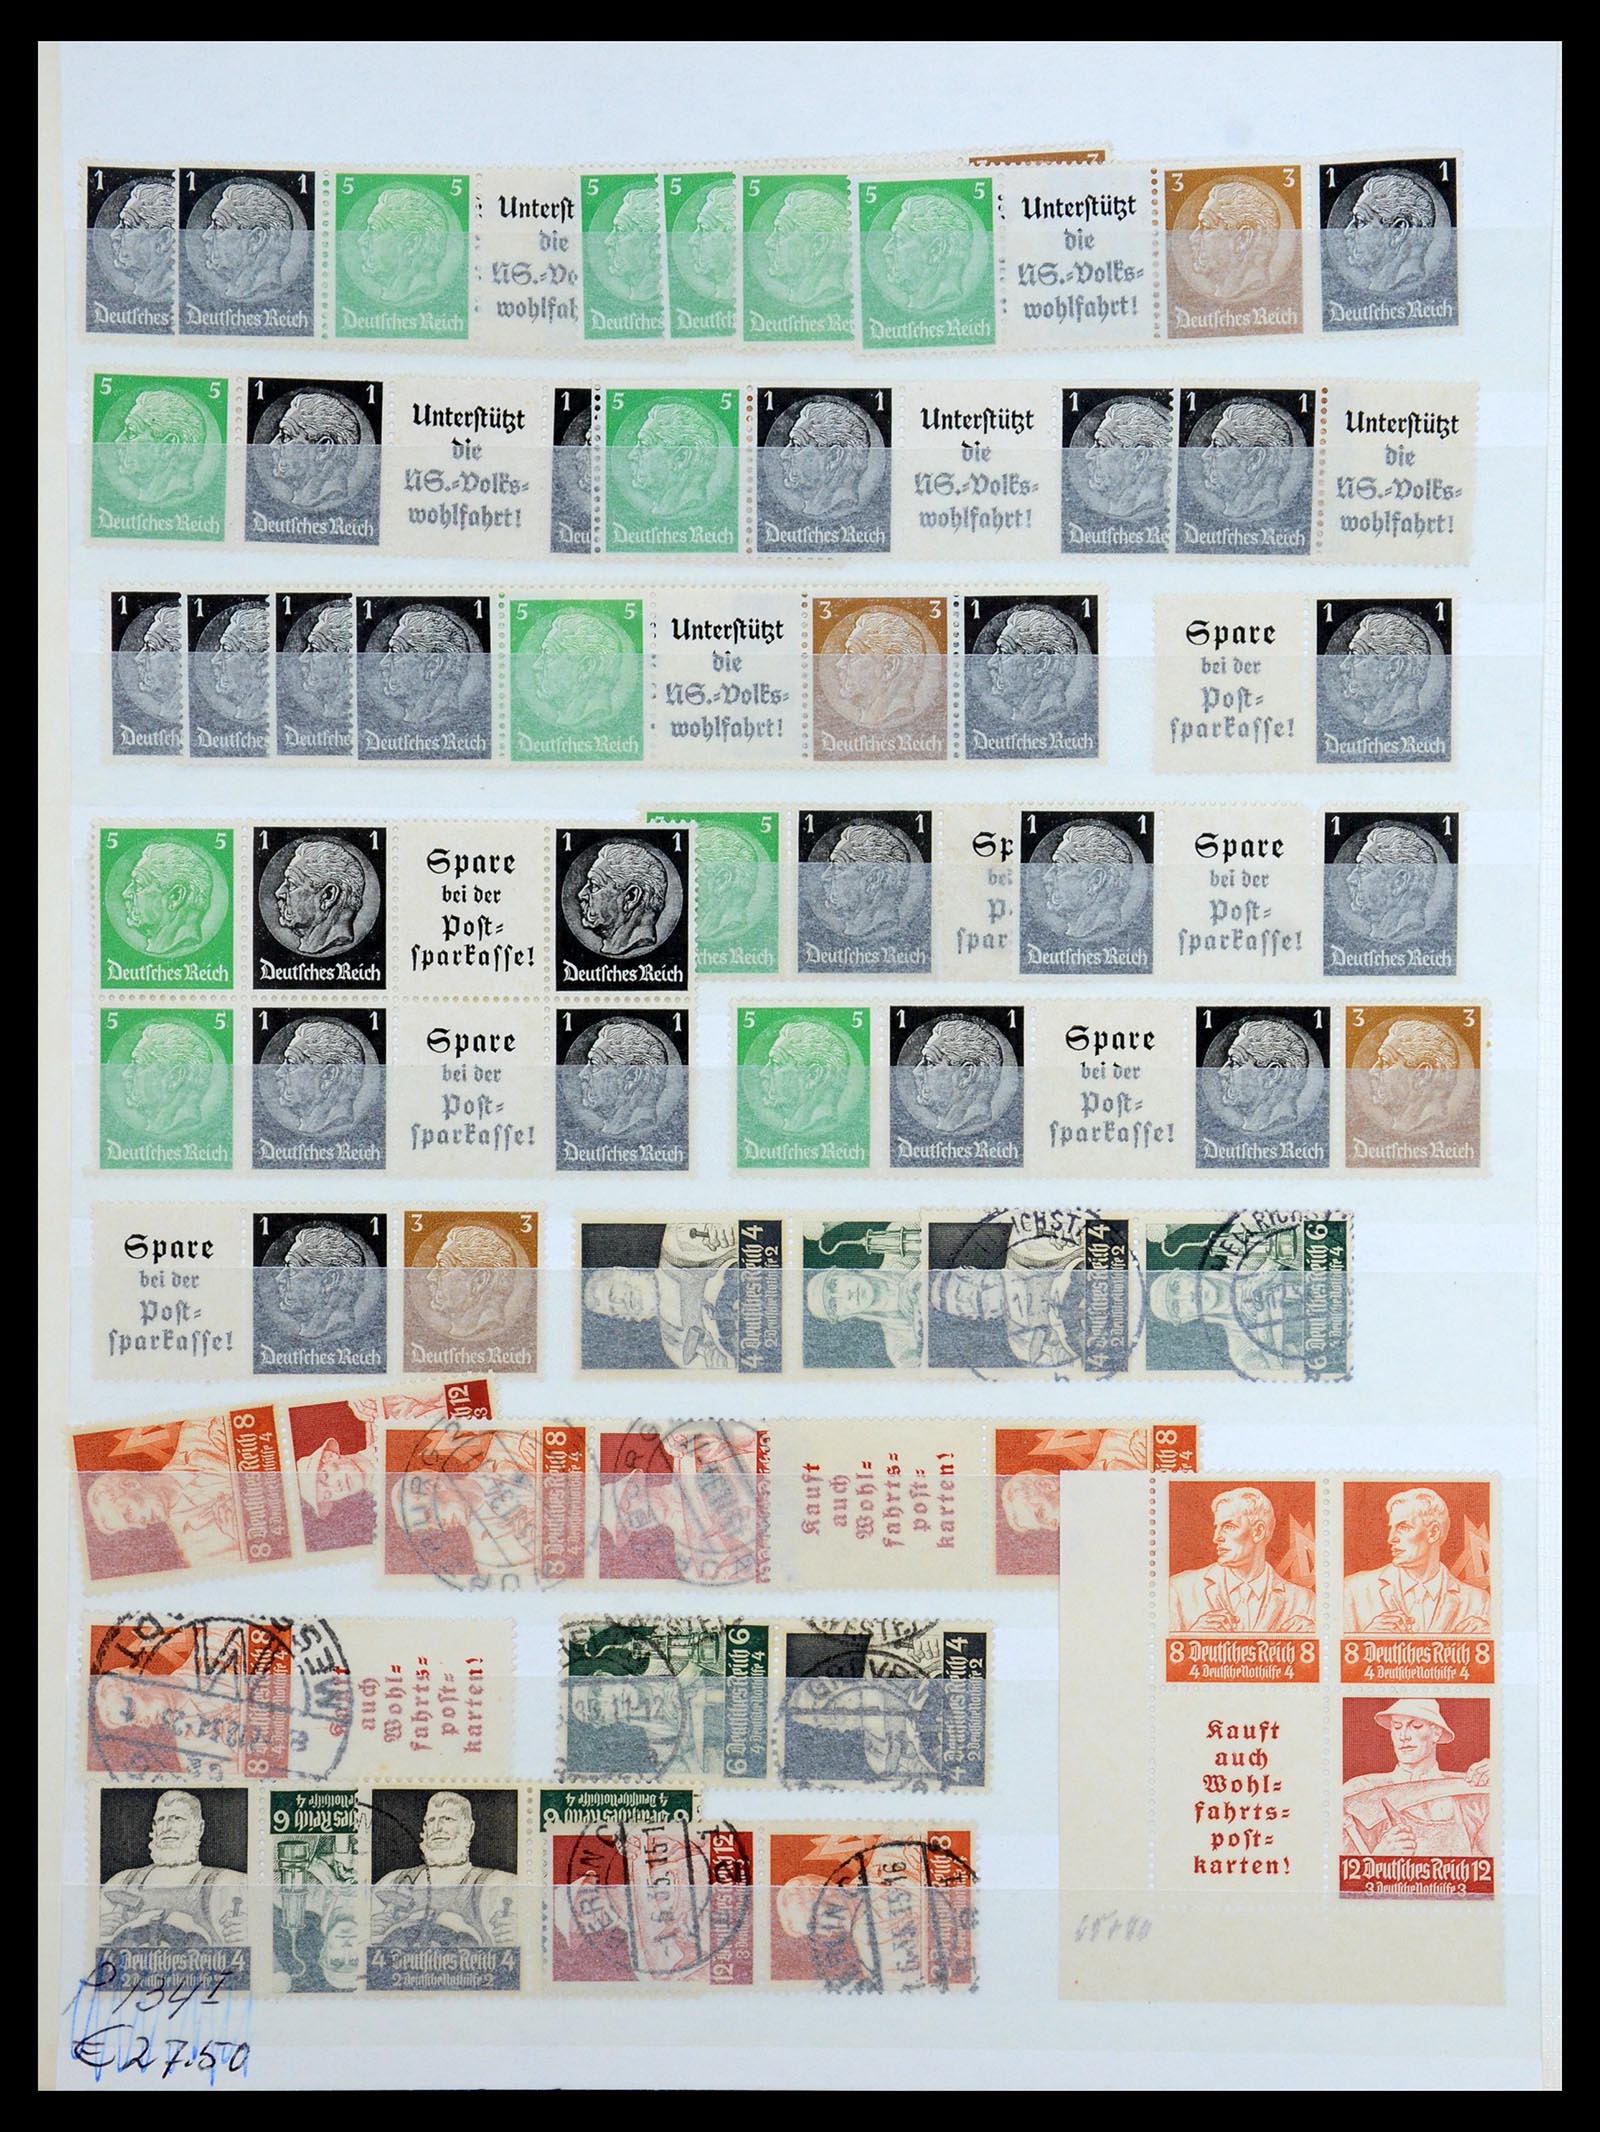 36370 017 - Postzegelverzameling 36370 Duitsland combinaties 1910-1980.